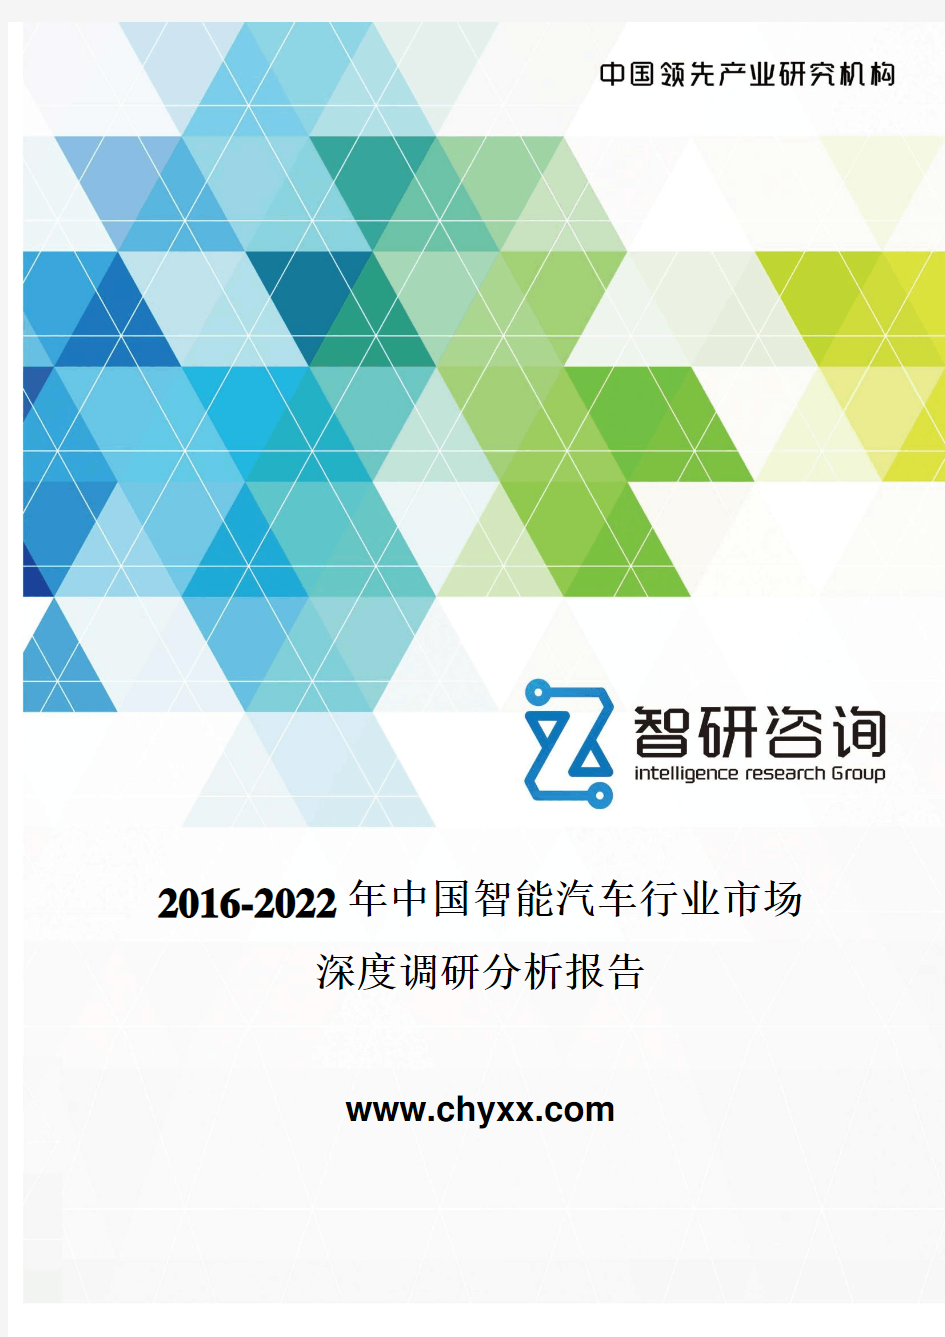 2016-2022年中国智能汽车行业市场深度调研报告